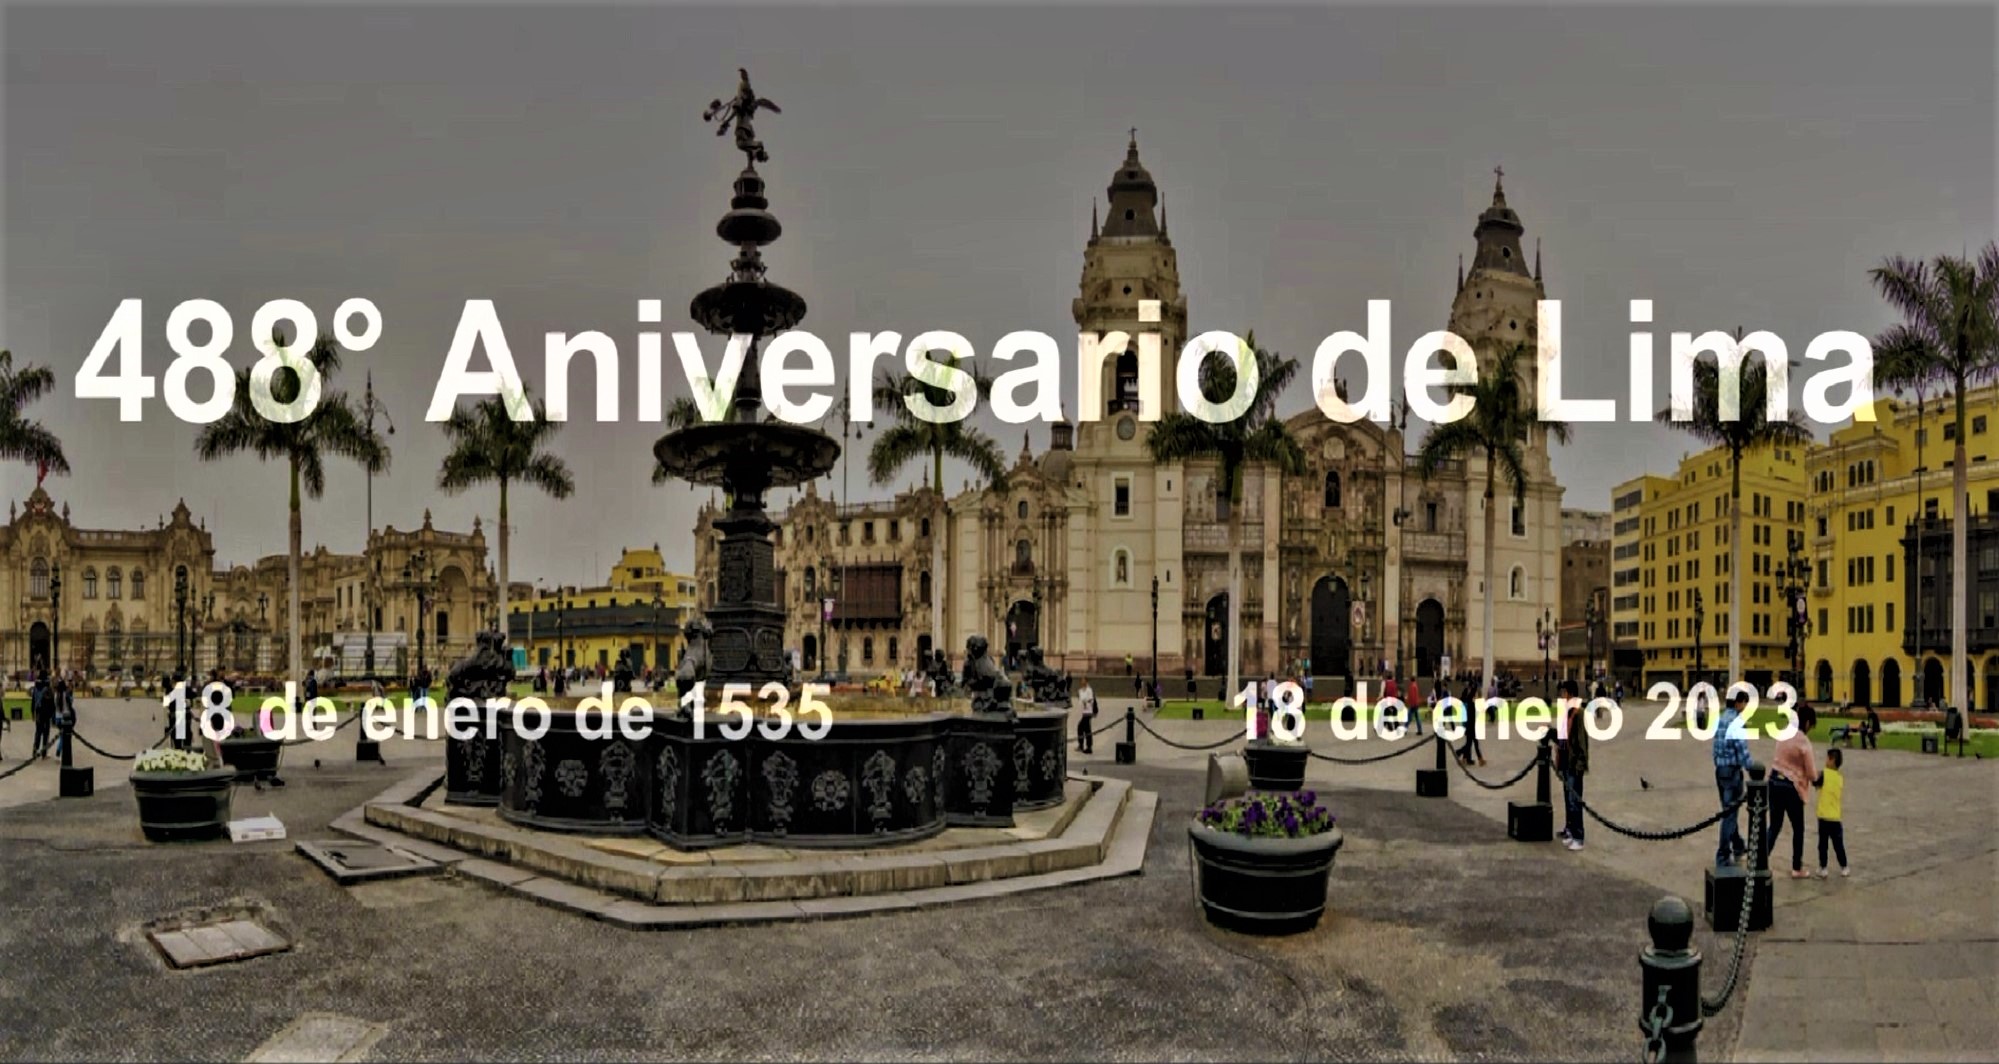 Lima "Las Tres Veces Coronada Ciudad de los Reyes", cumple 488°Aniversario de fundación.